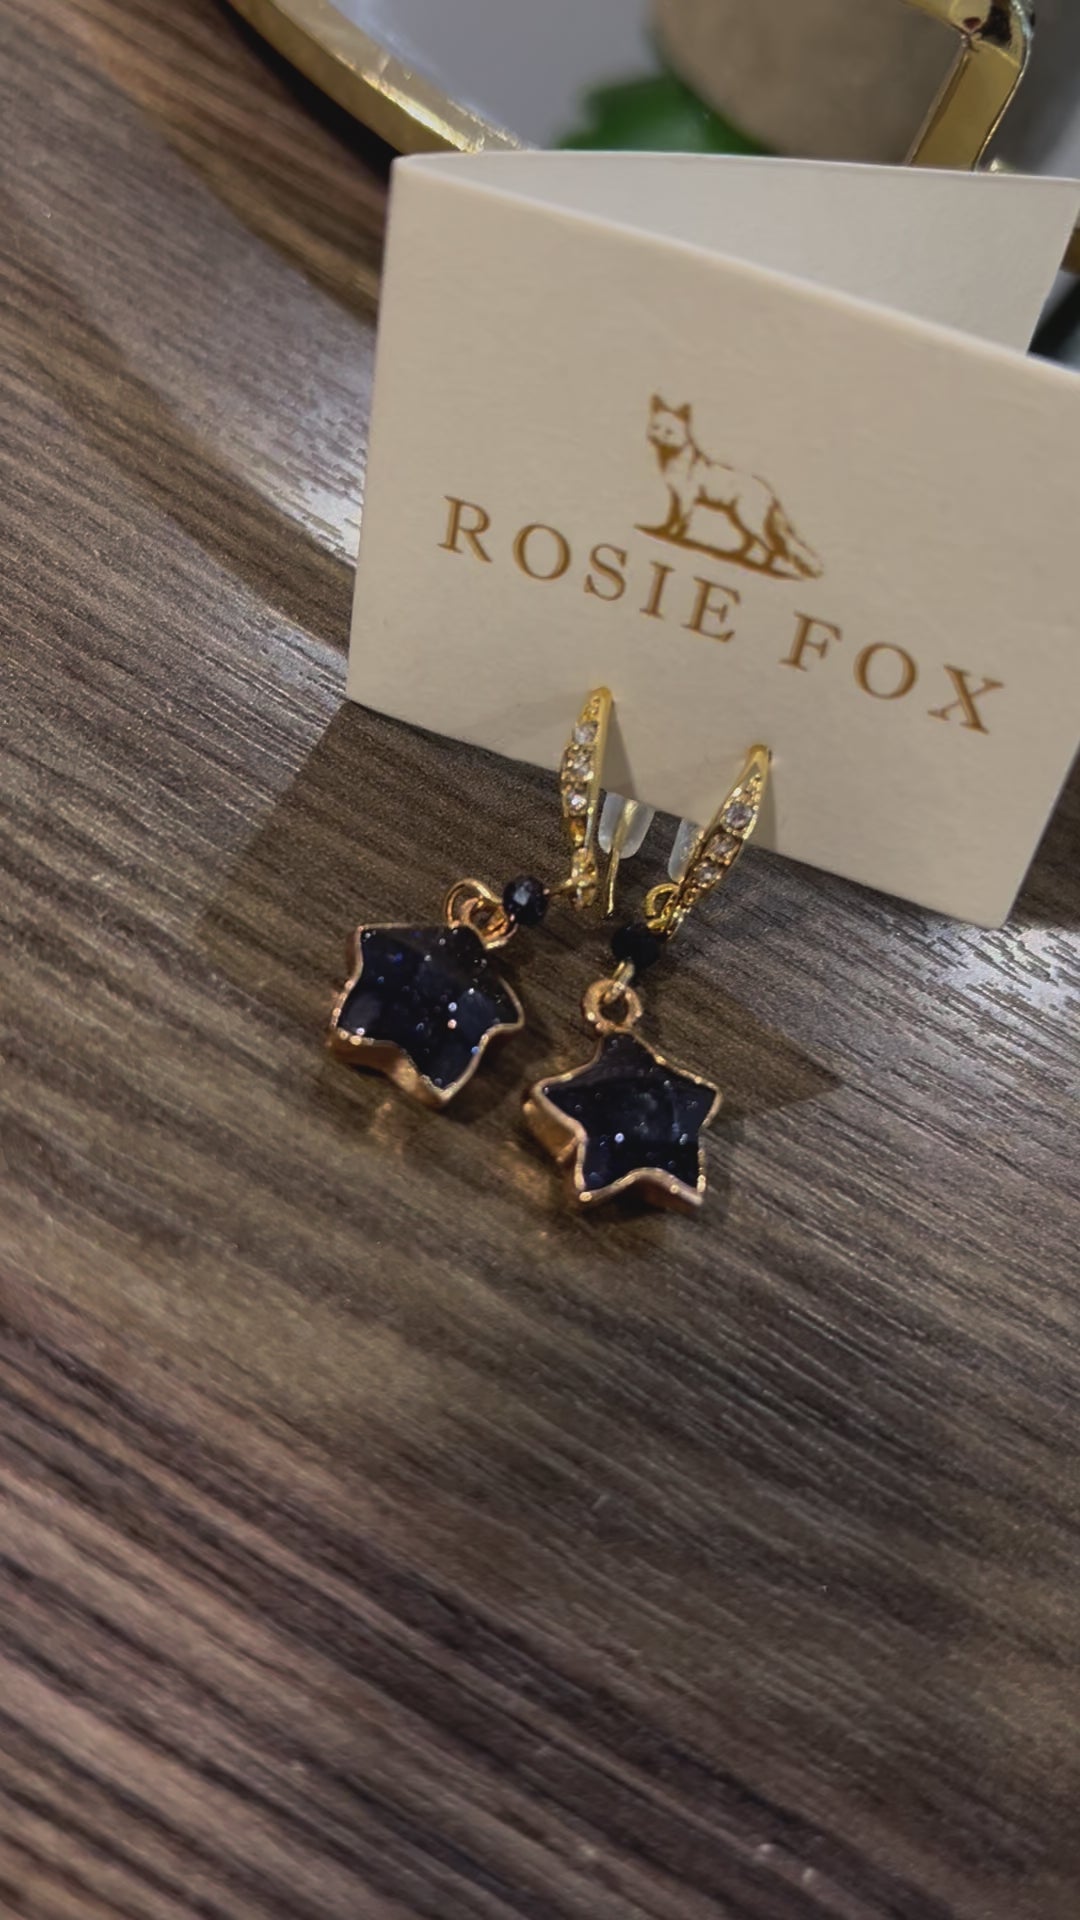 Rosie Fox Navy Star Earrings